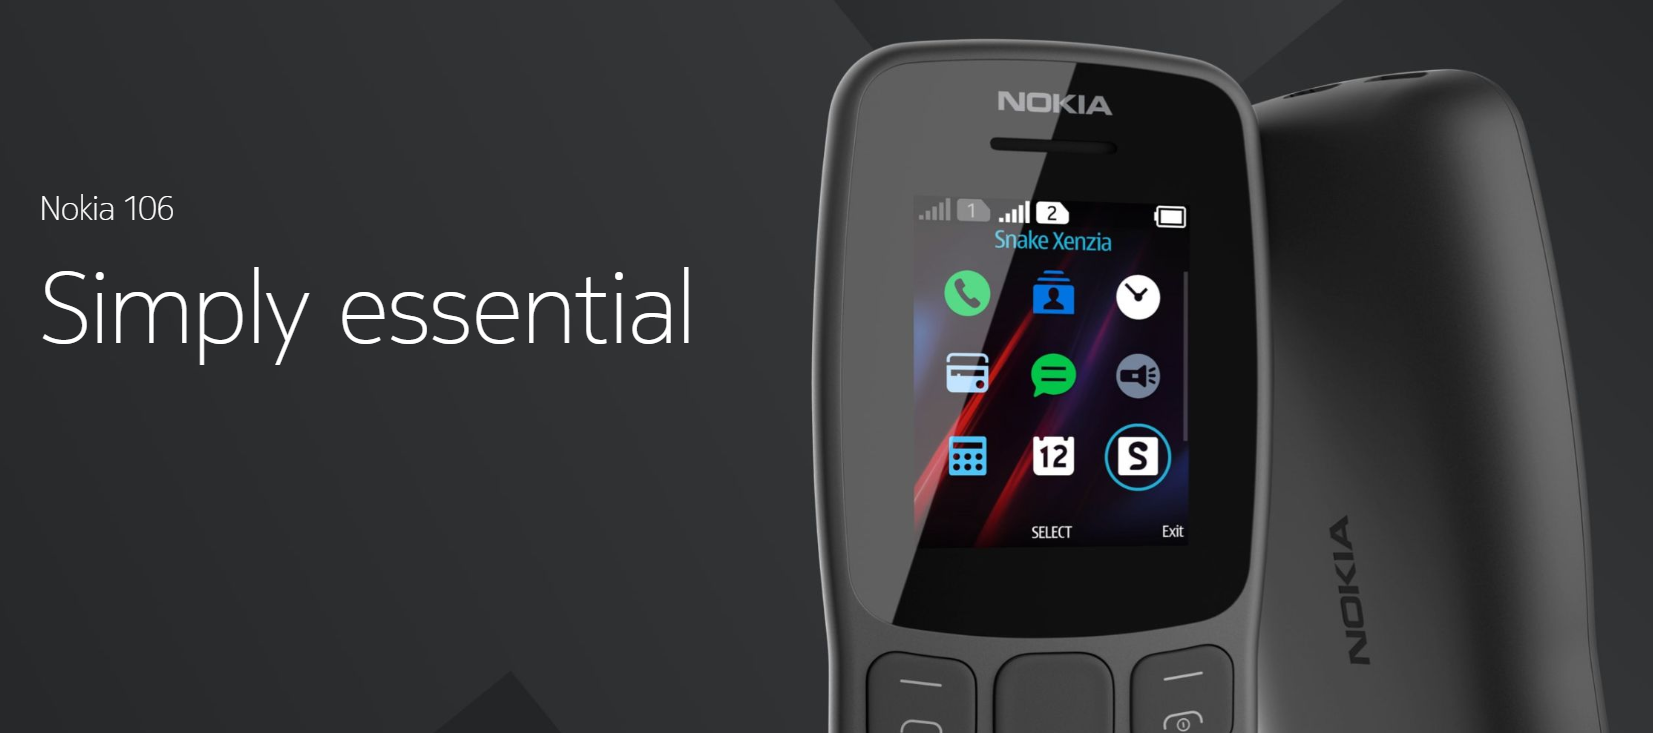 Nokia 106 featured